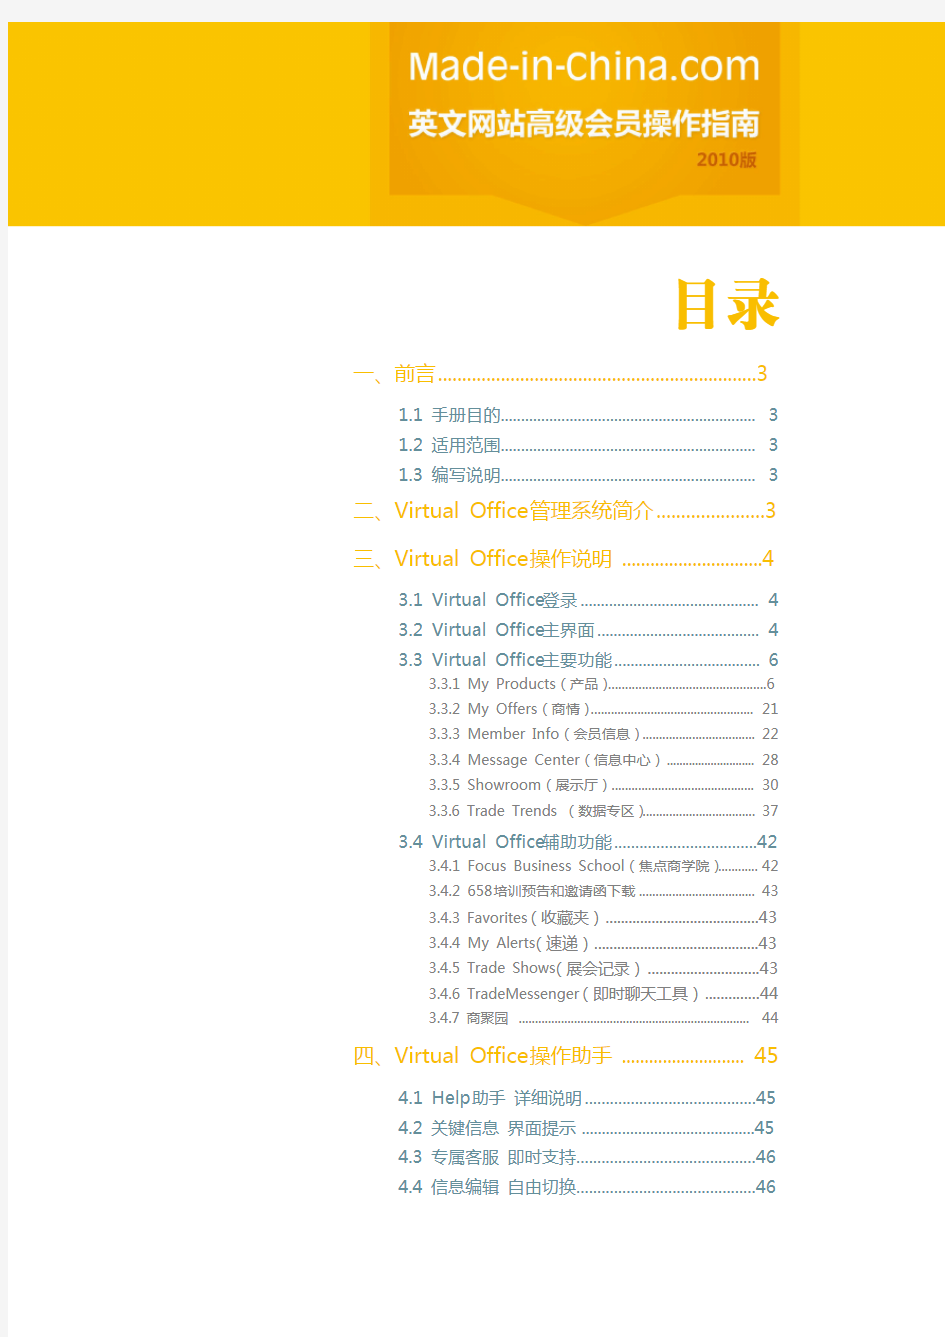 中国制造网英文网站高级会员操作指南(2010版)